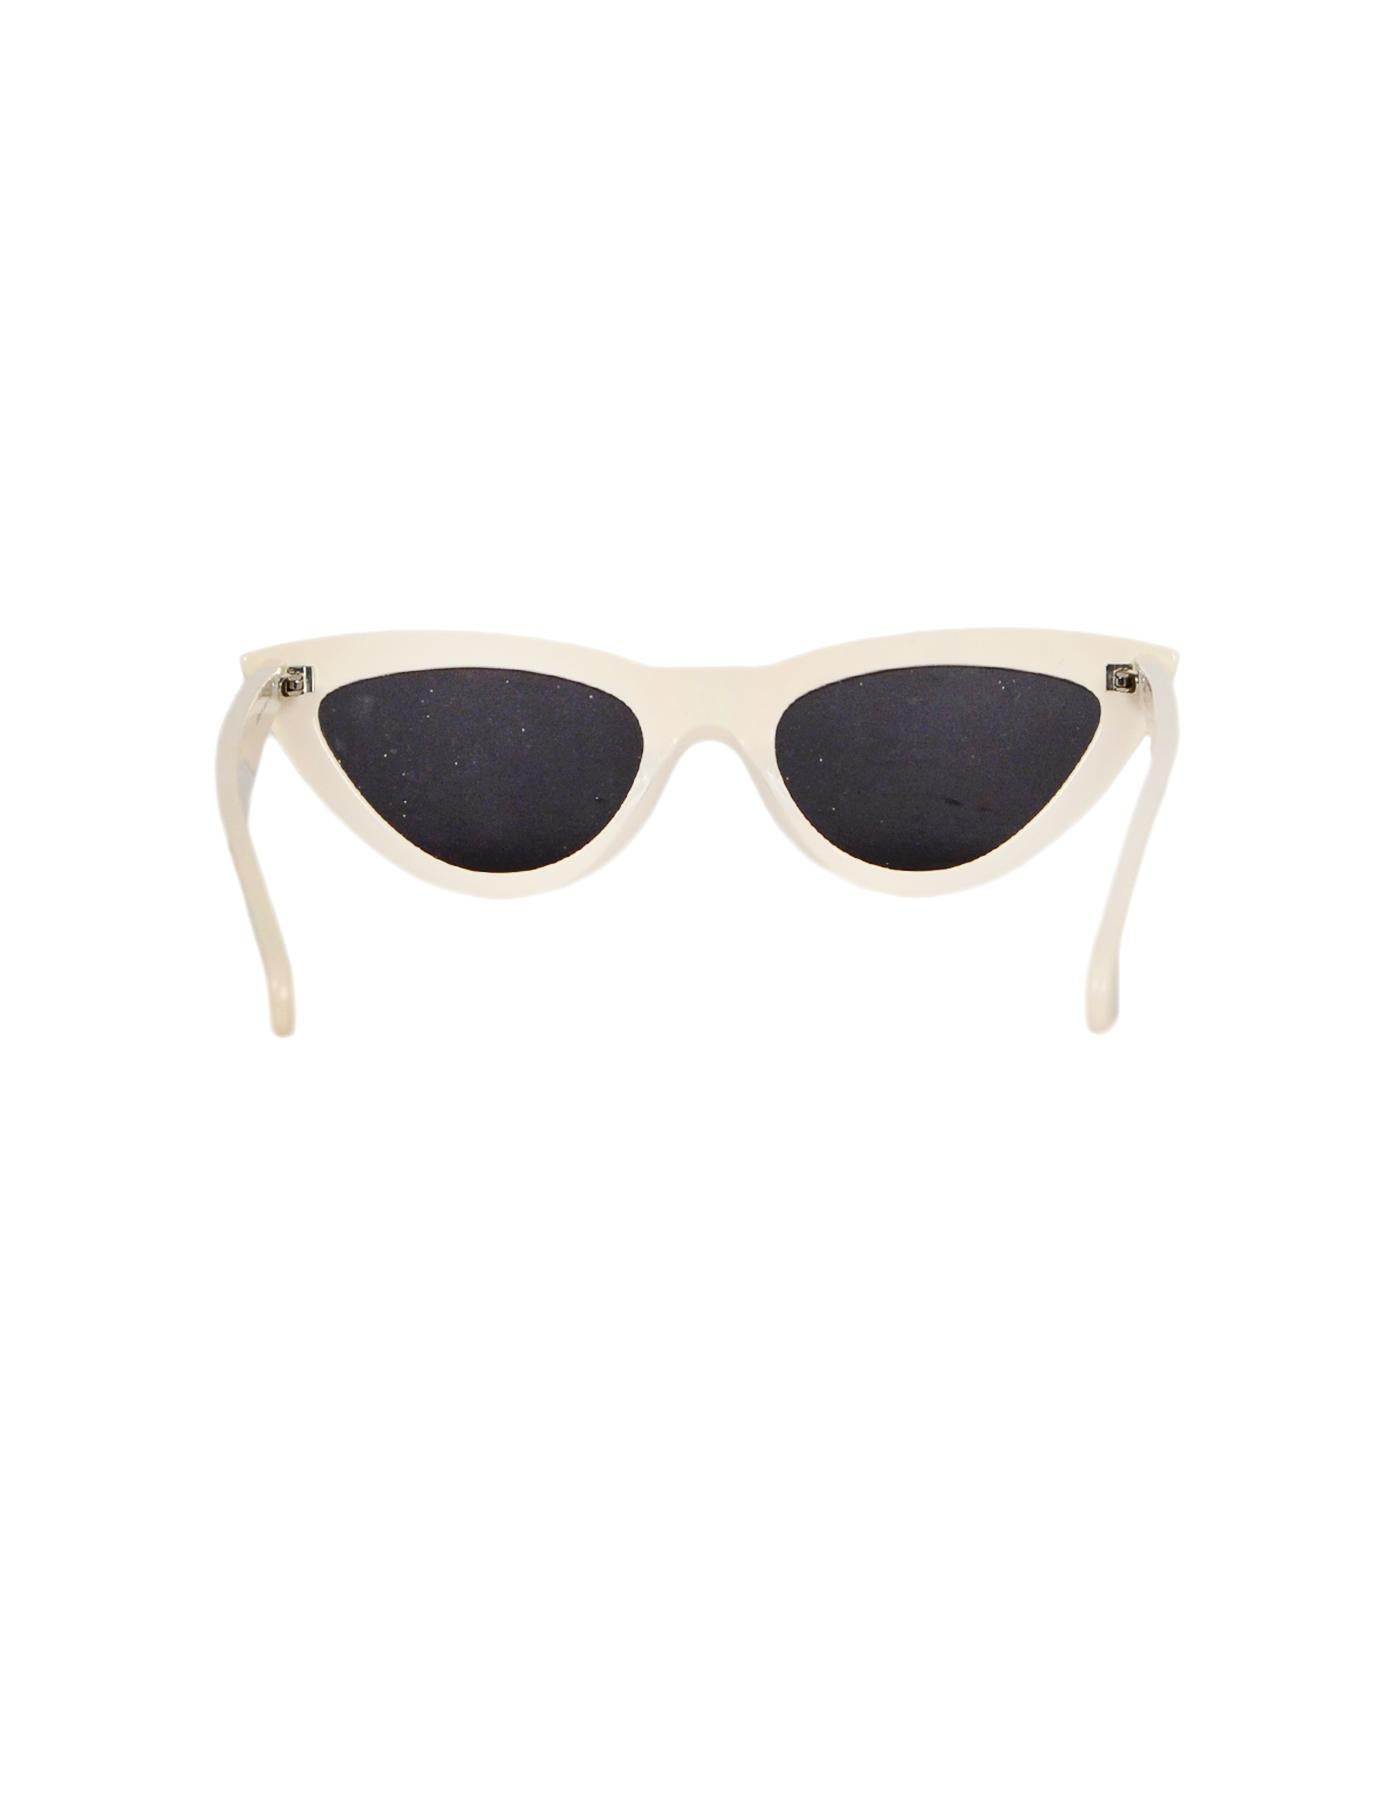 Celine White Cat Eye Sunglasses Sale Online, 60% OFF | www ...